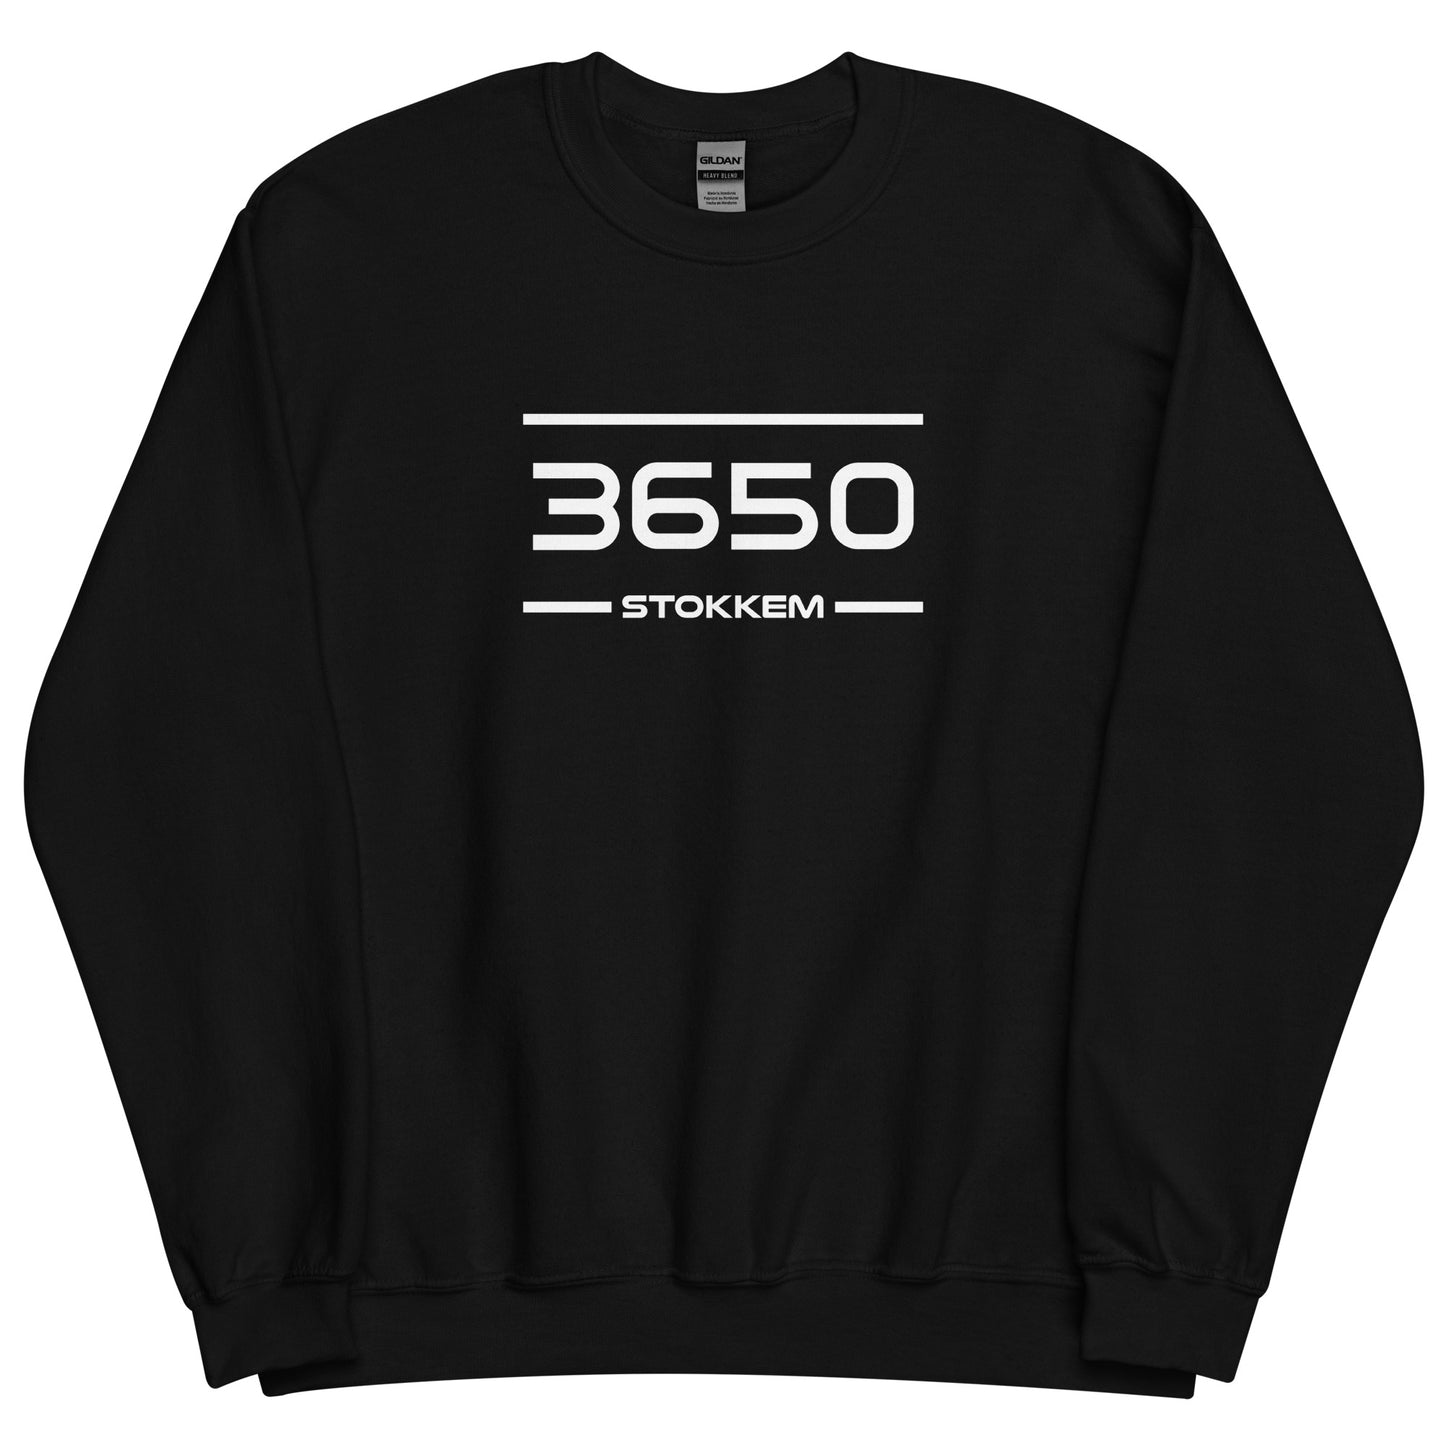 Sweater - 3650 - Stokkem (M/V)